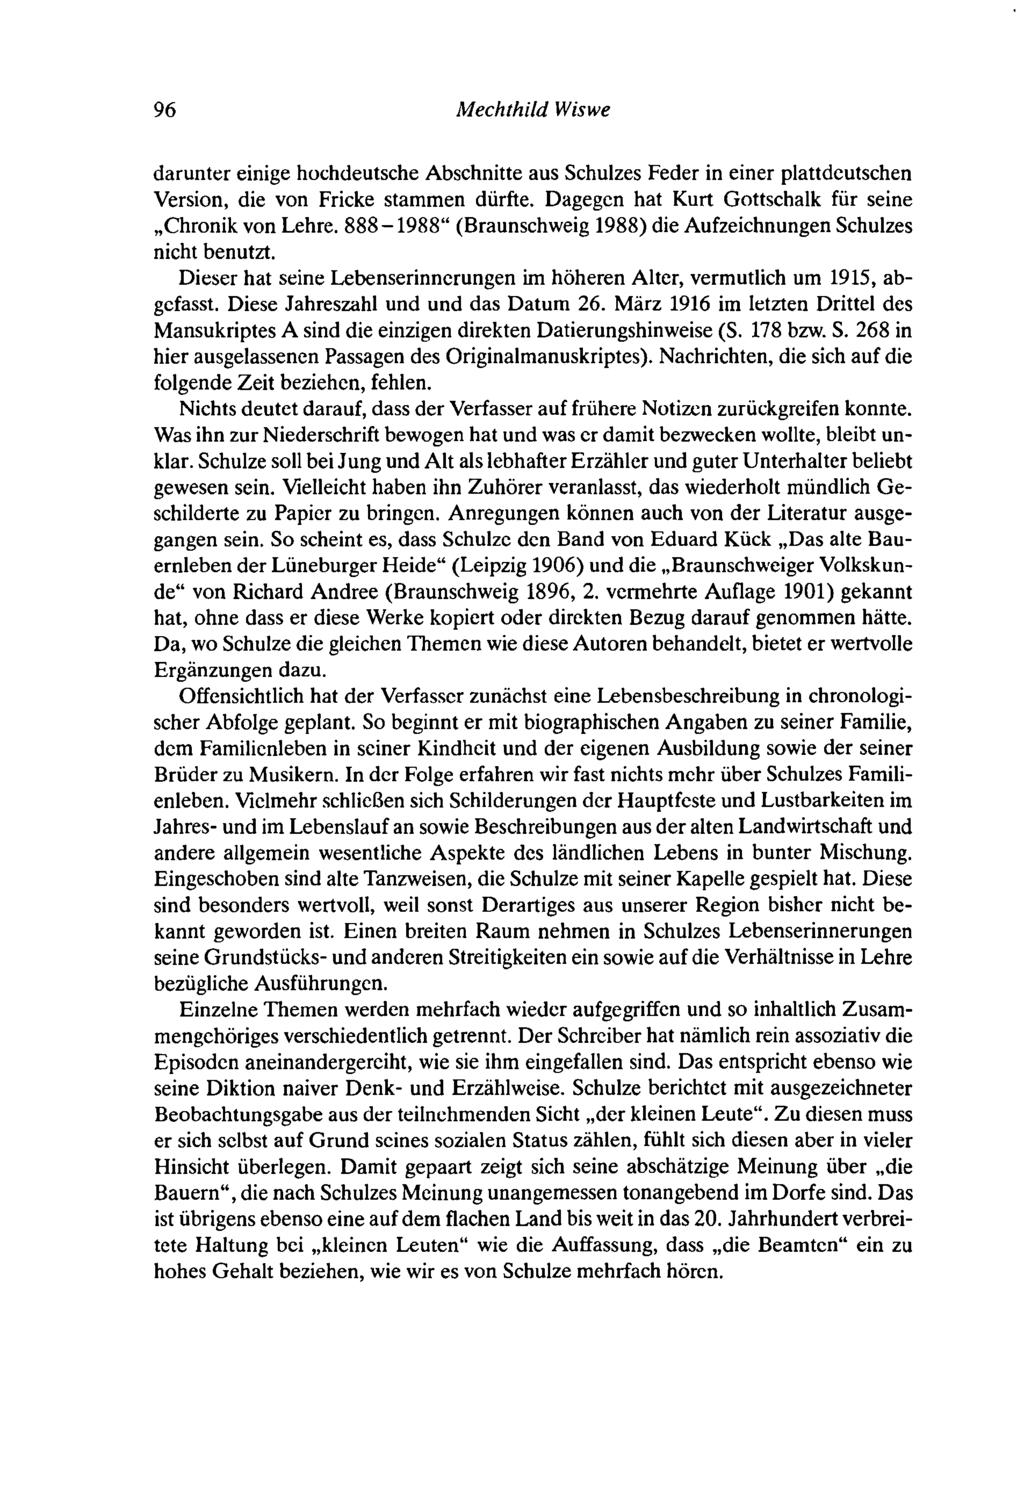 96 Mechthild Wiswe daruntt:r einige hochdeutsche Abschnitte aus Schulzes Feder in einer plattdeutschen Version, die von Fricke stammen dürfte. Dagegen hat Kurt Gottschalk für seine "Chronik von Lehre.